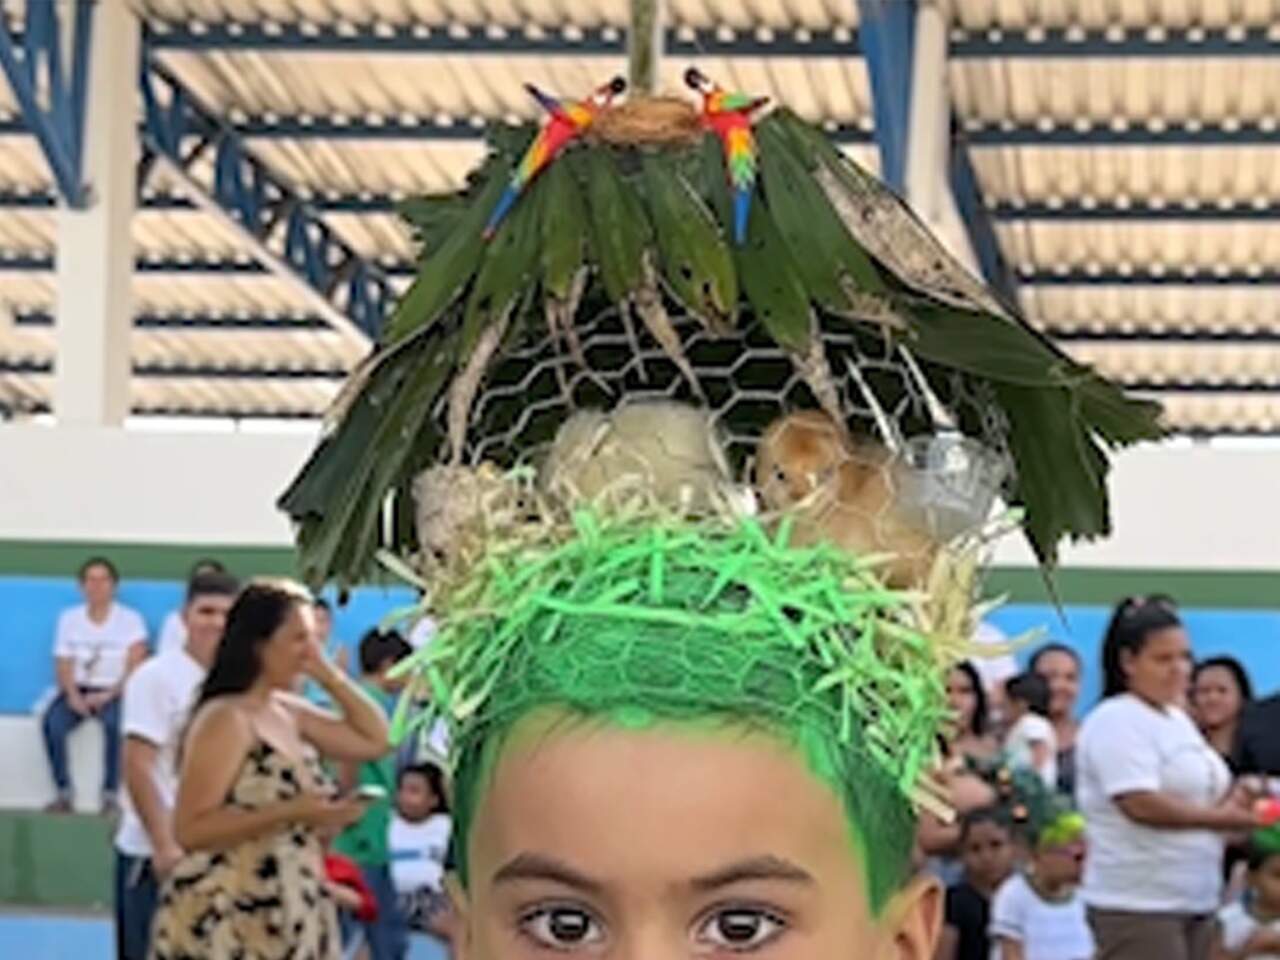 Em concurso de cabelo maluco, criança aparece com pintinhos na cabeça